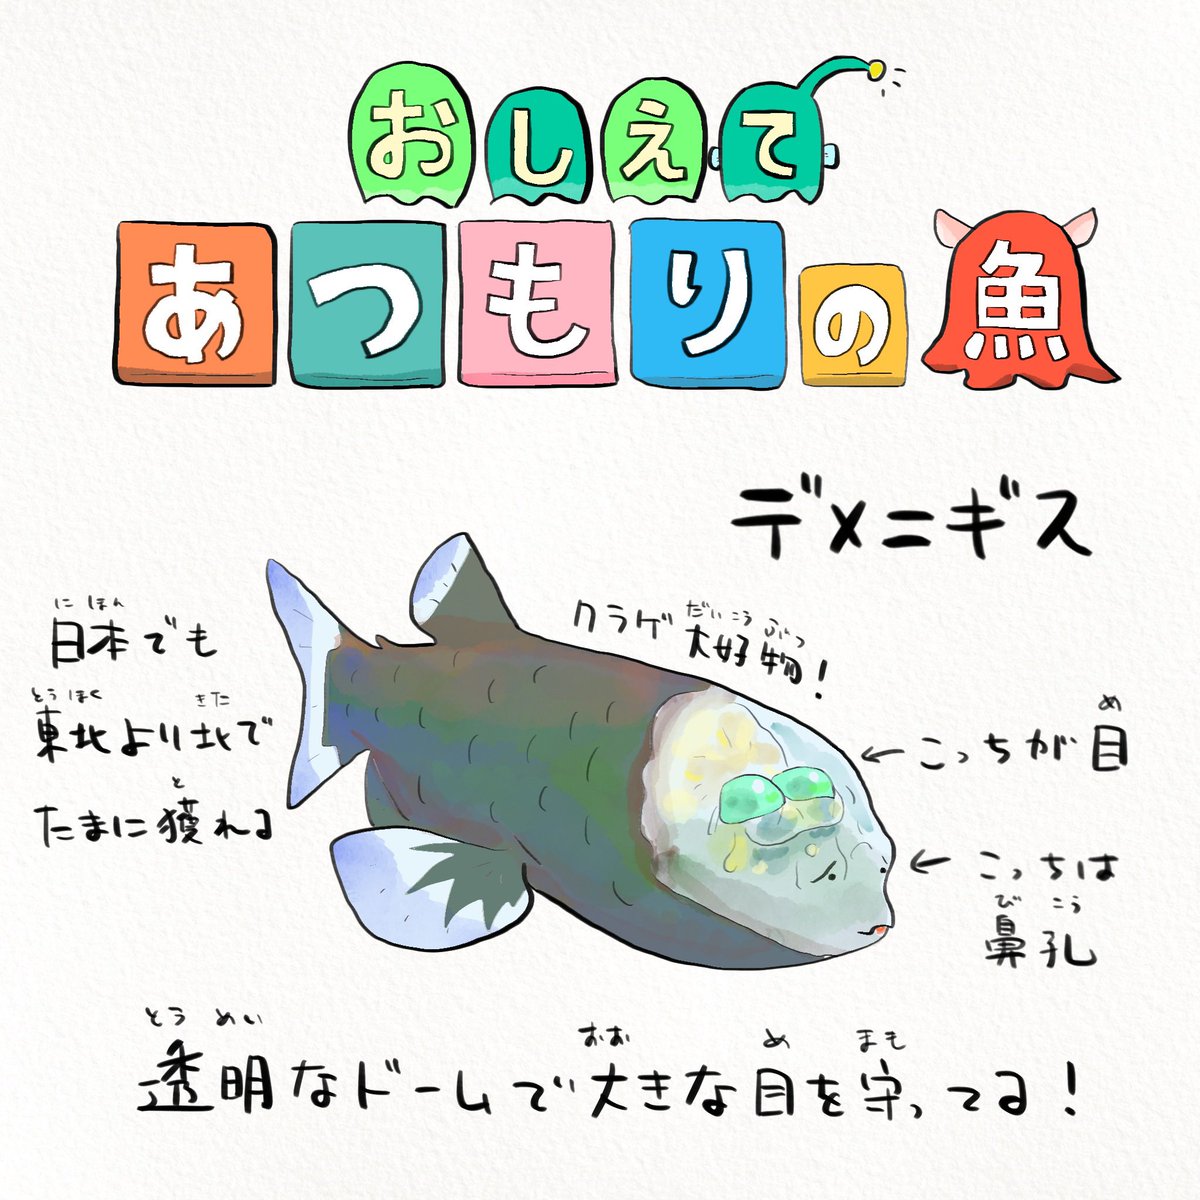 任天堂の人気ゲームから魚に興味を持ってもらえたら? 